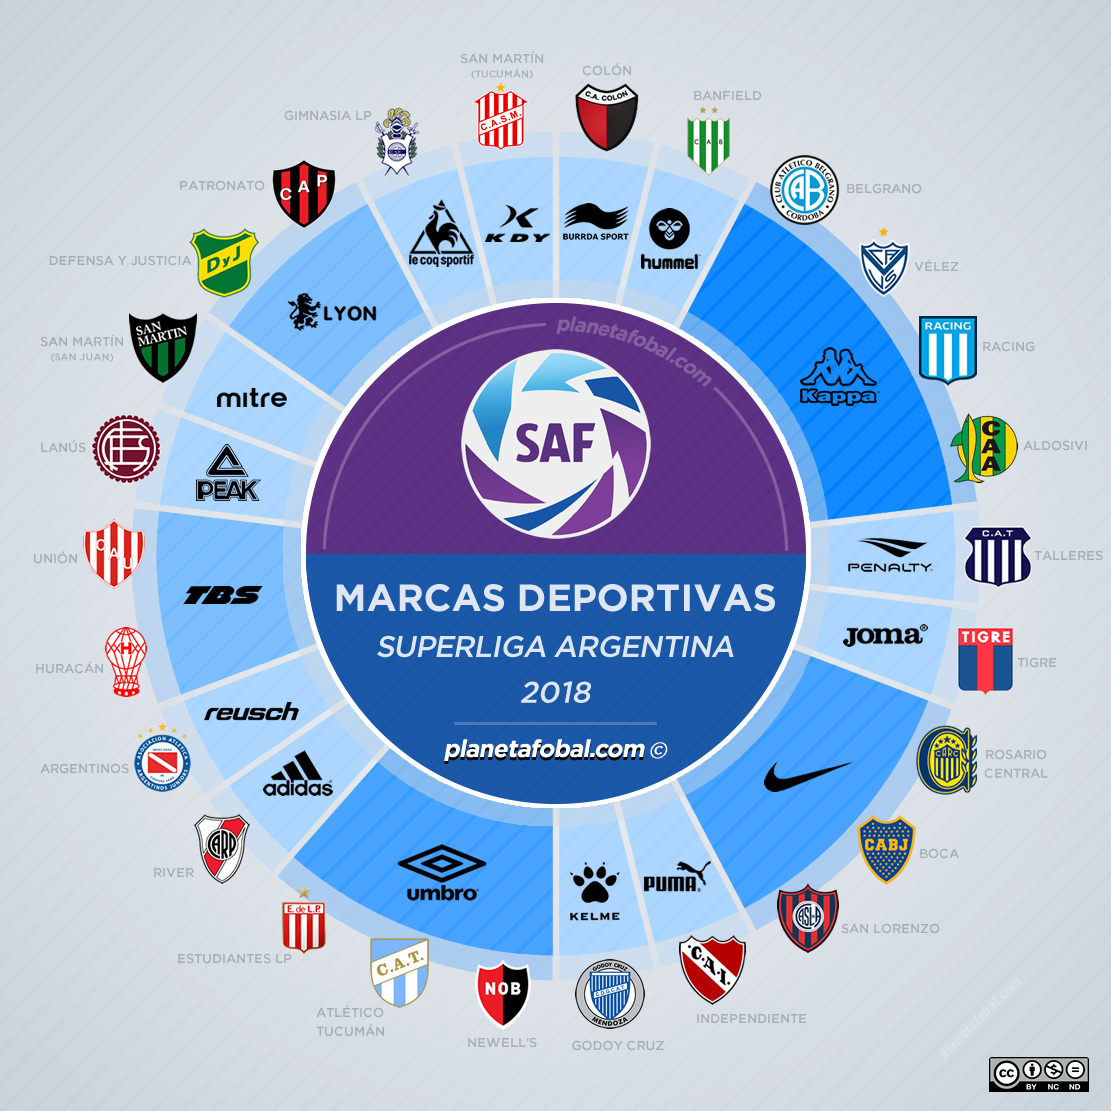 Exención girasol congelador Marcas deportivas de la Superliga Argentina de Fútbol 2018 | Infografías